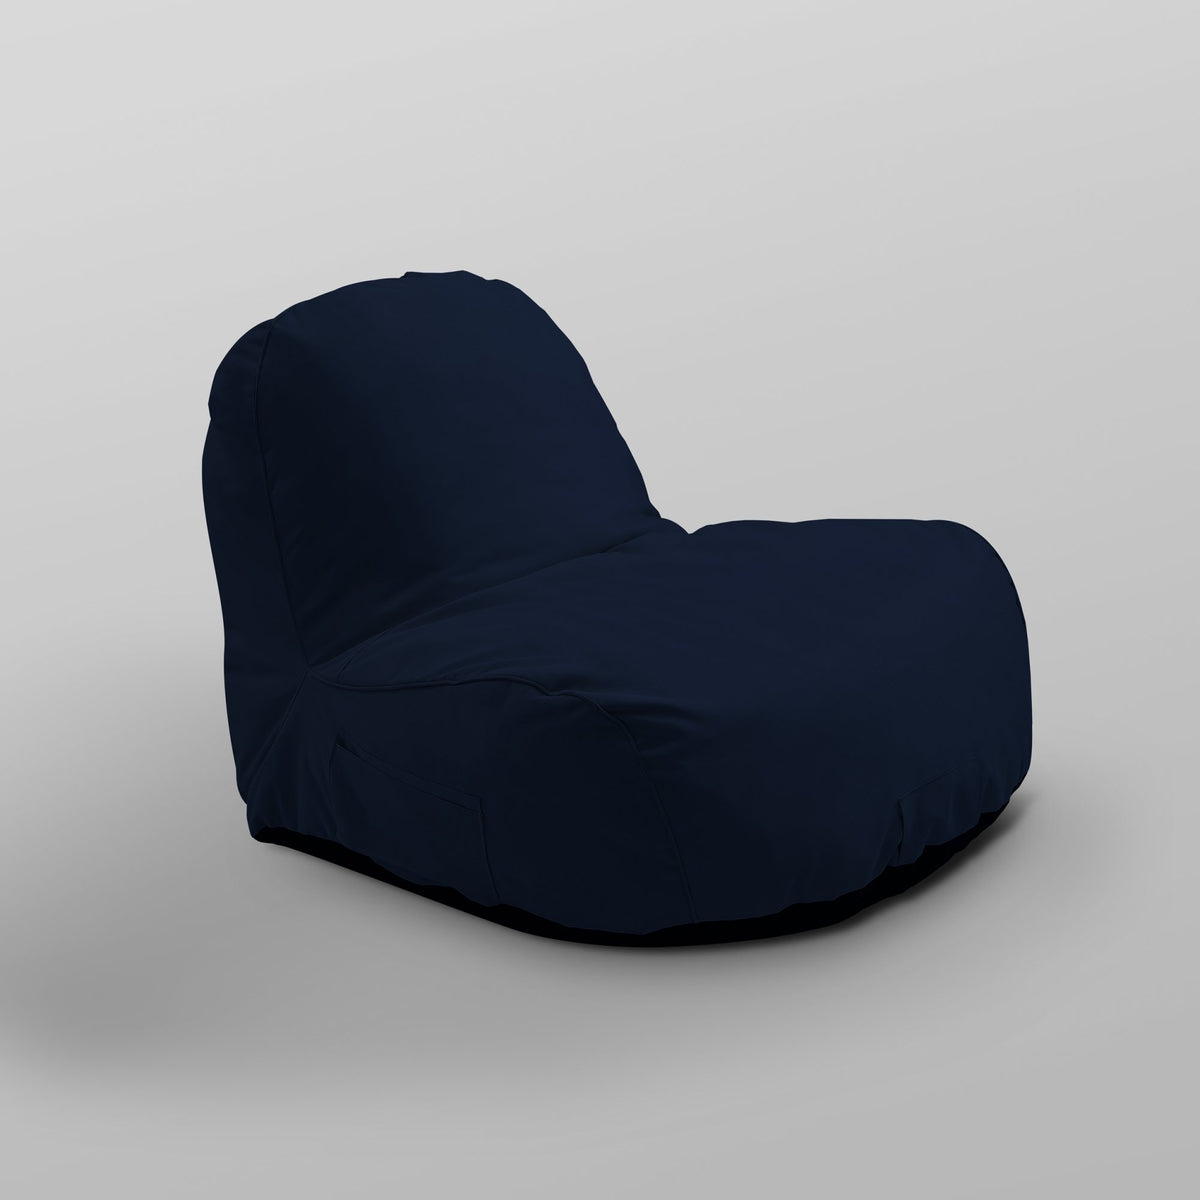 Bean Bag Chair/ Lounge Chair/ Memory Foam Chair/ Floor Chair - Cosmic Bean Bag Chair/ Lounge Chair/ Memory Foam Chair/ Floor Chair